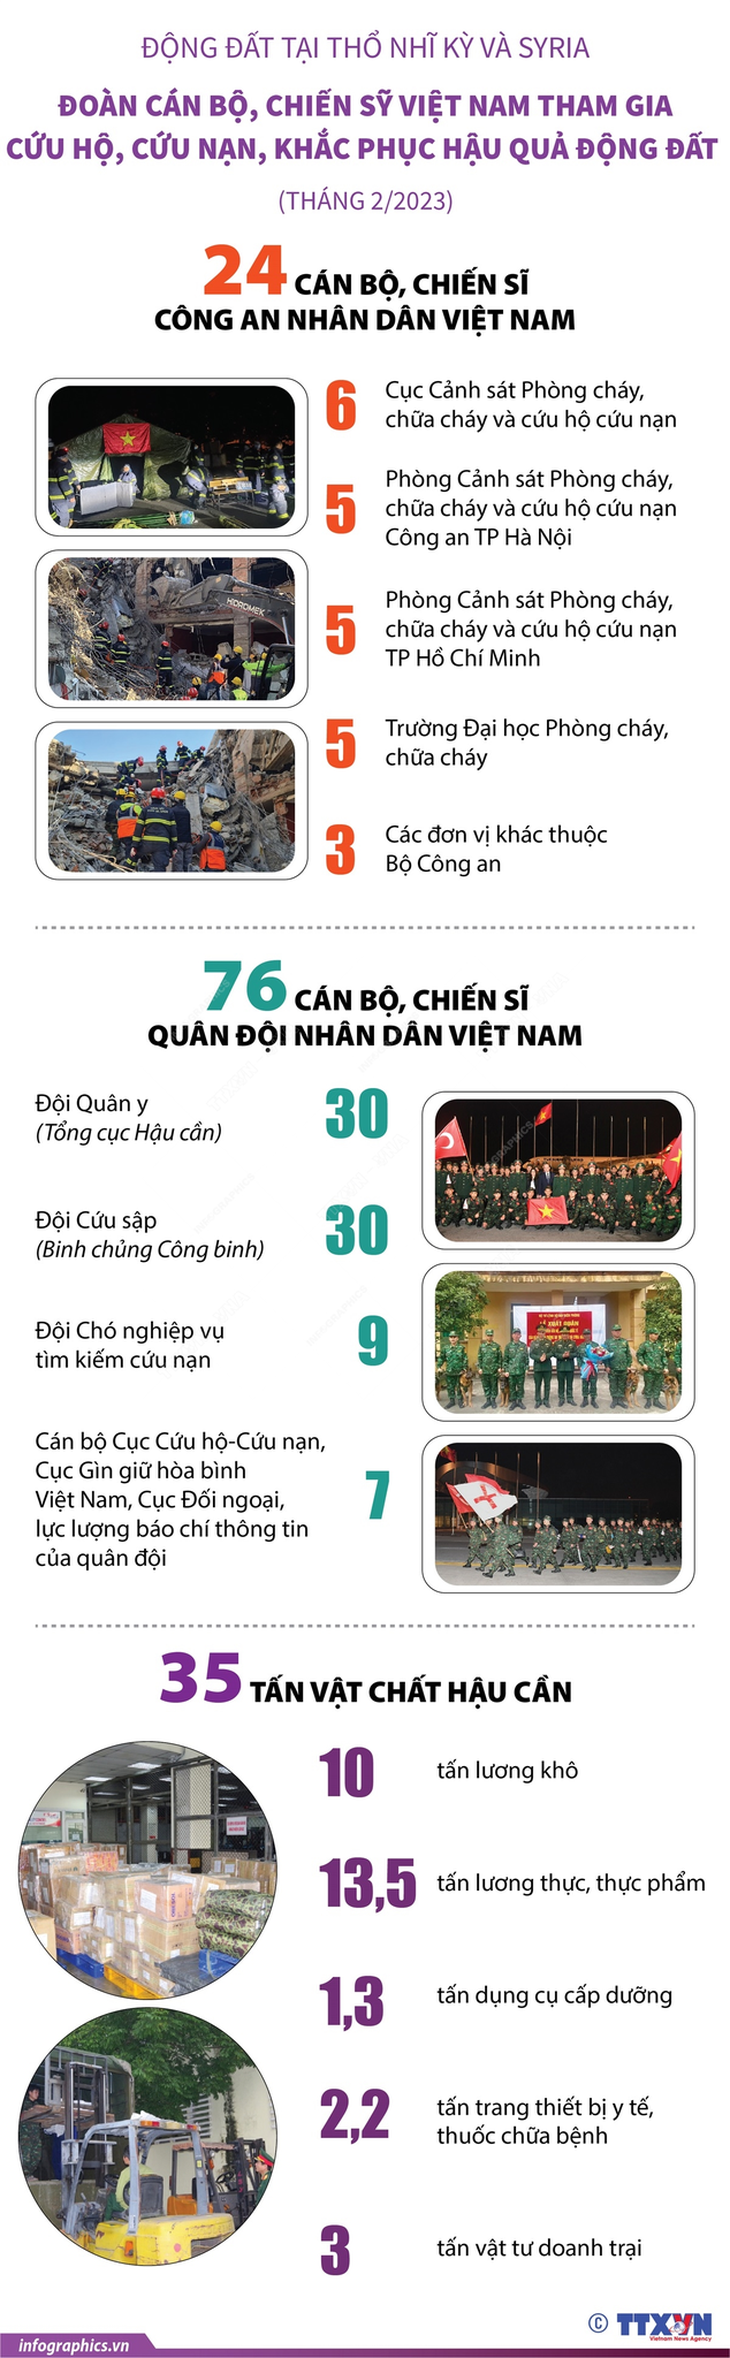 Đoàn Việt Nam tham gia cứu hộ, khắc phục hậu quả động đất - Nguồn: TTXVN